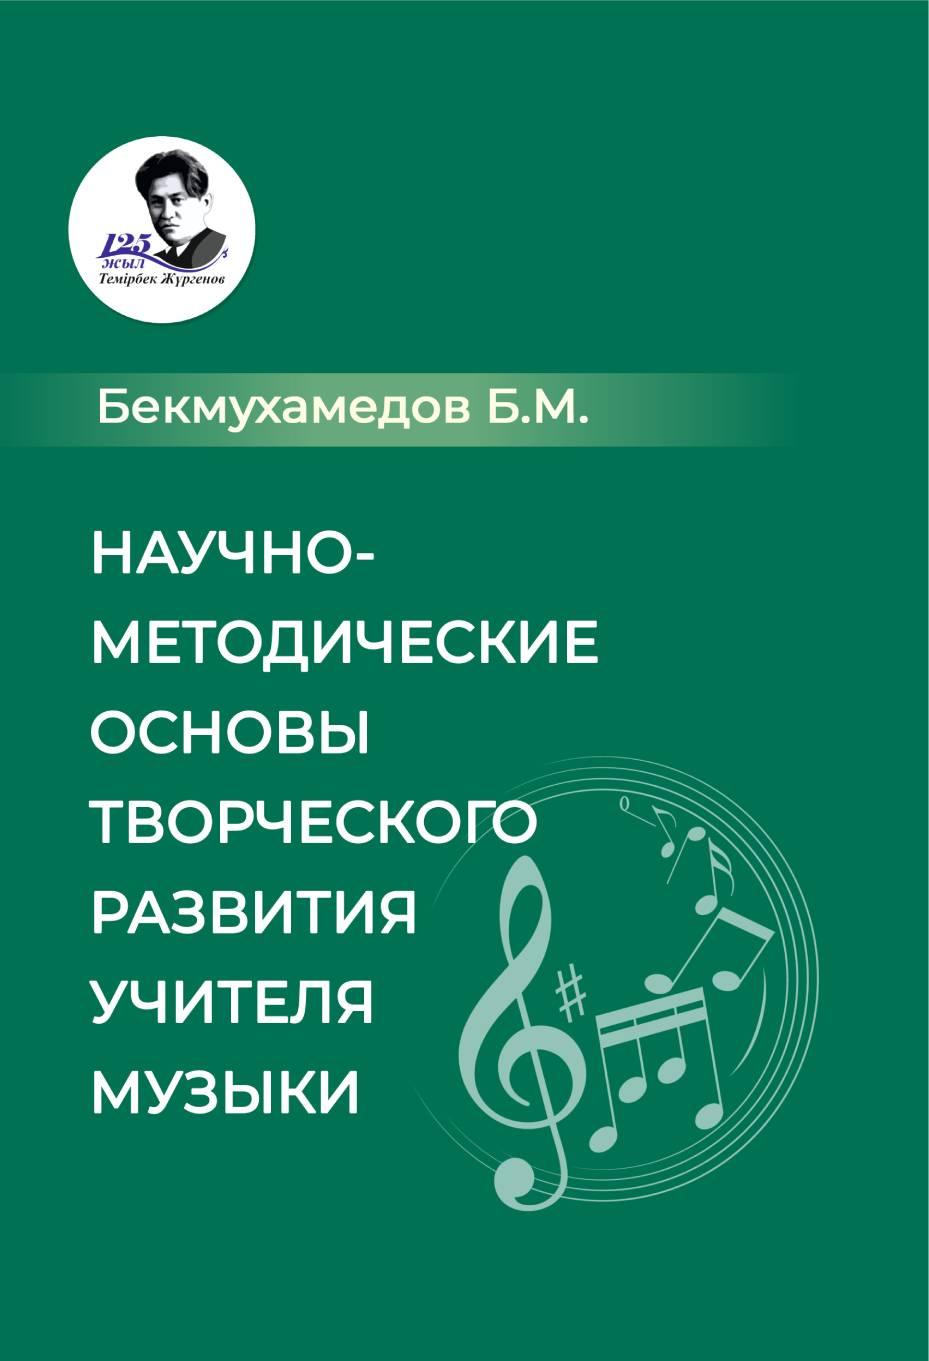 Научно-методические основы творческого развития учителя музыки. Монография. 2-ое издание.